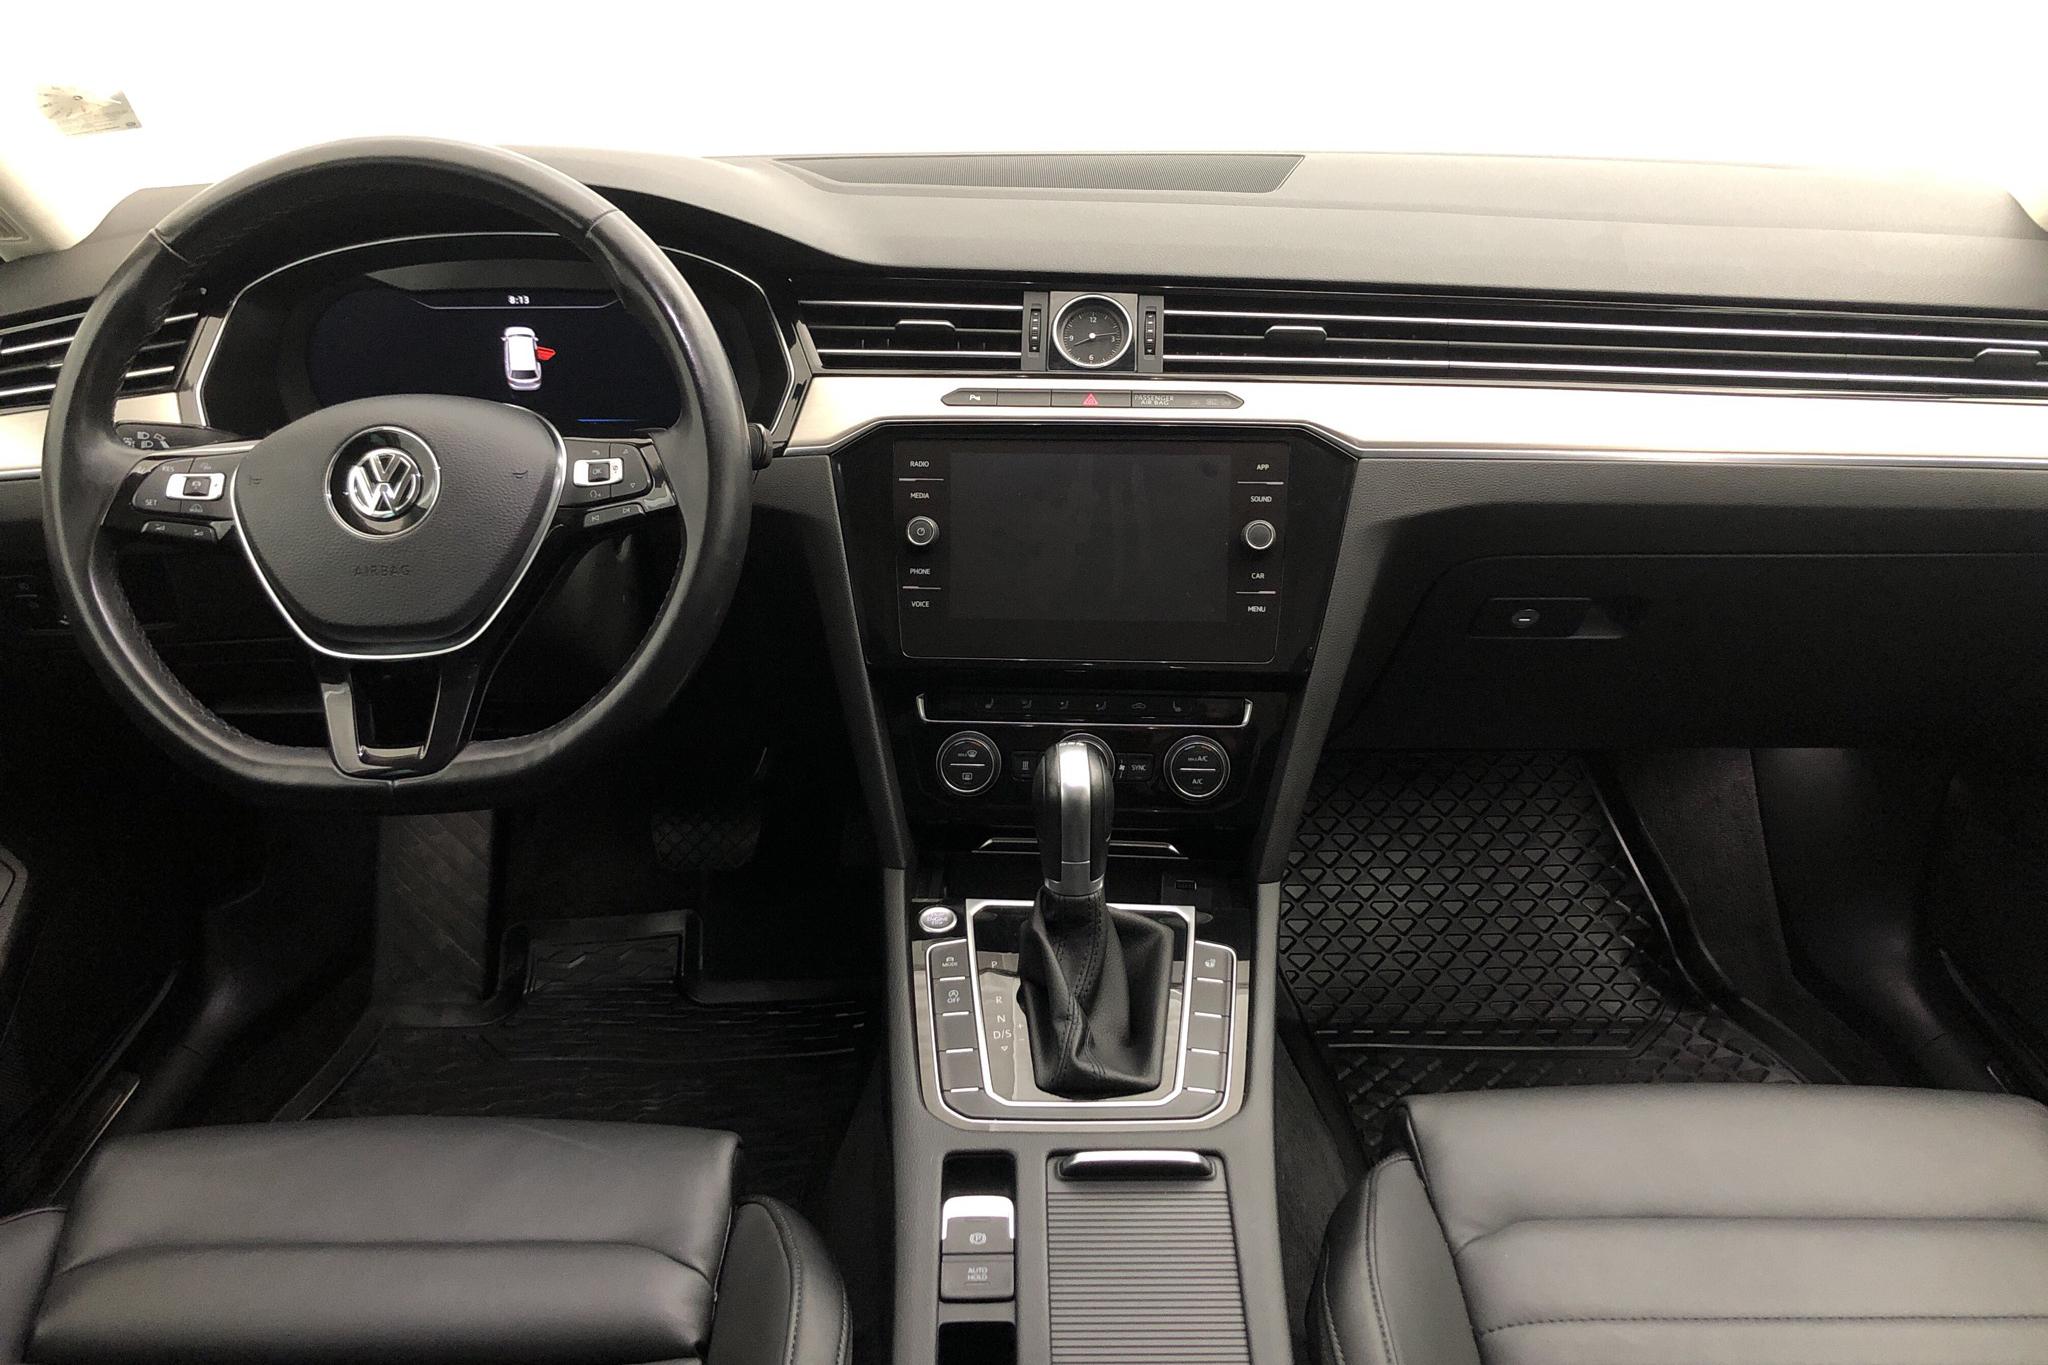 VW Passat 2.0 TDI Sportscombi (190hk) - 7 964 mil - Automat - vit - 2018